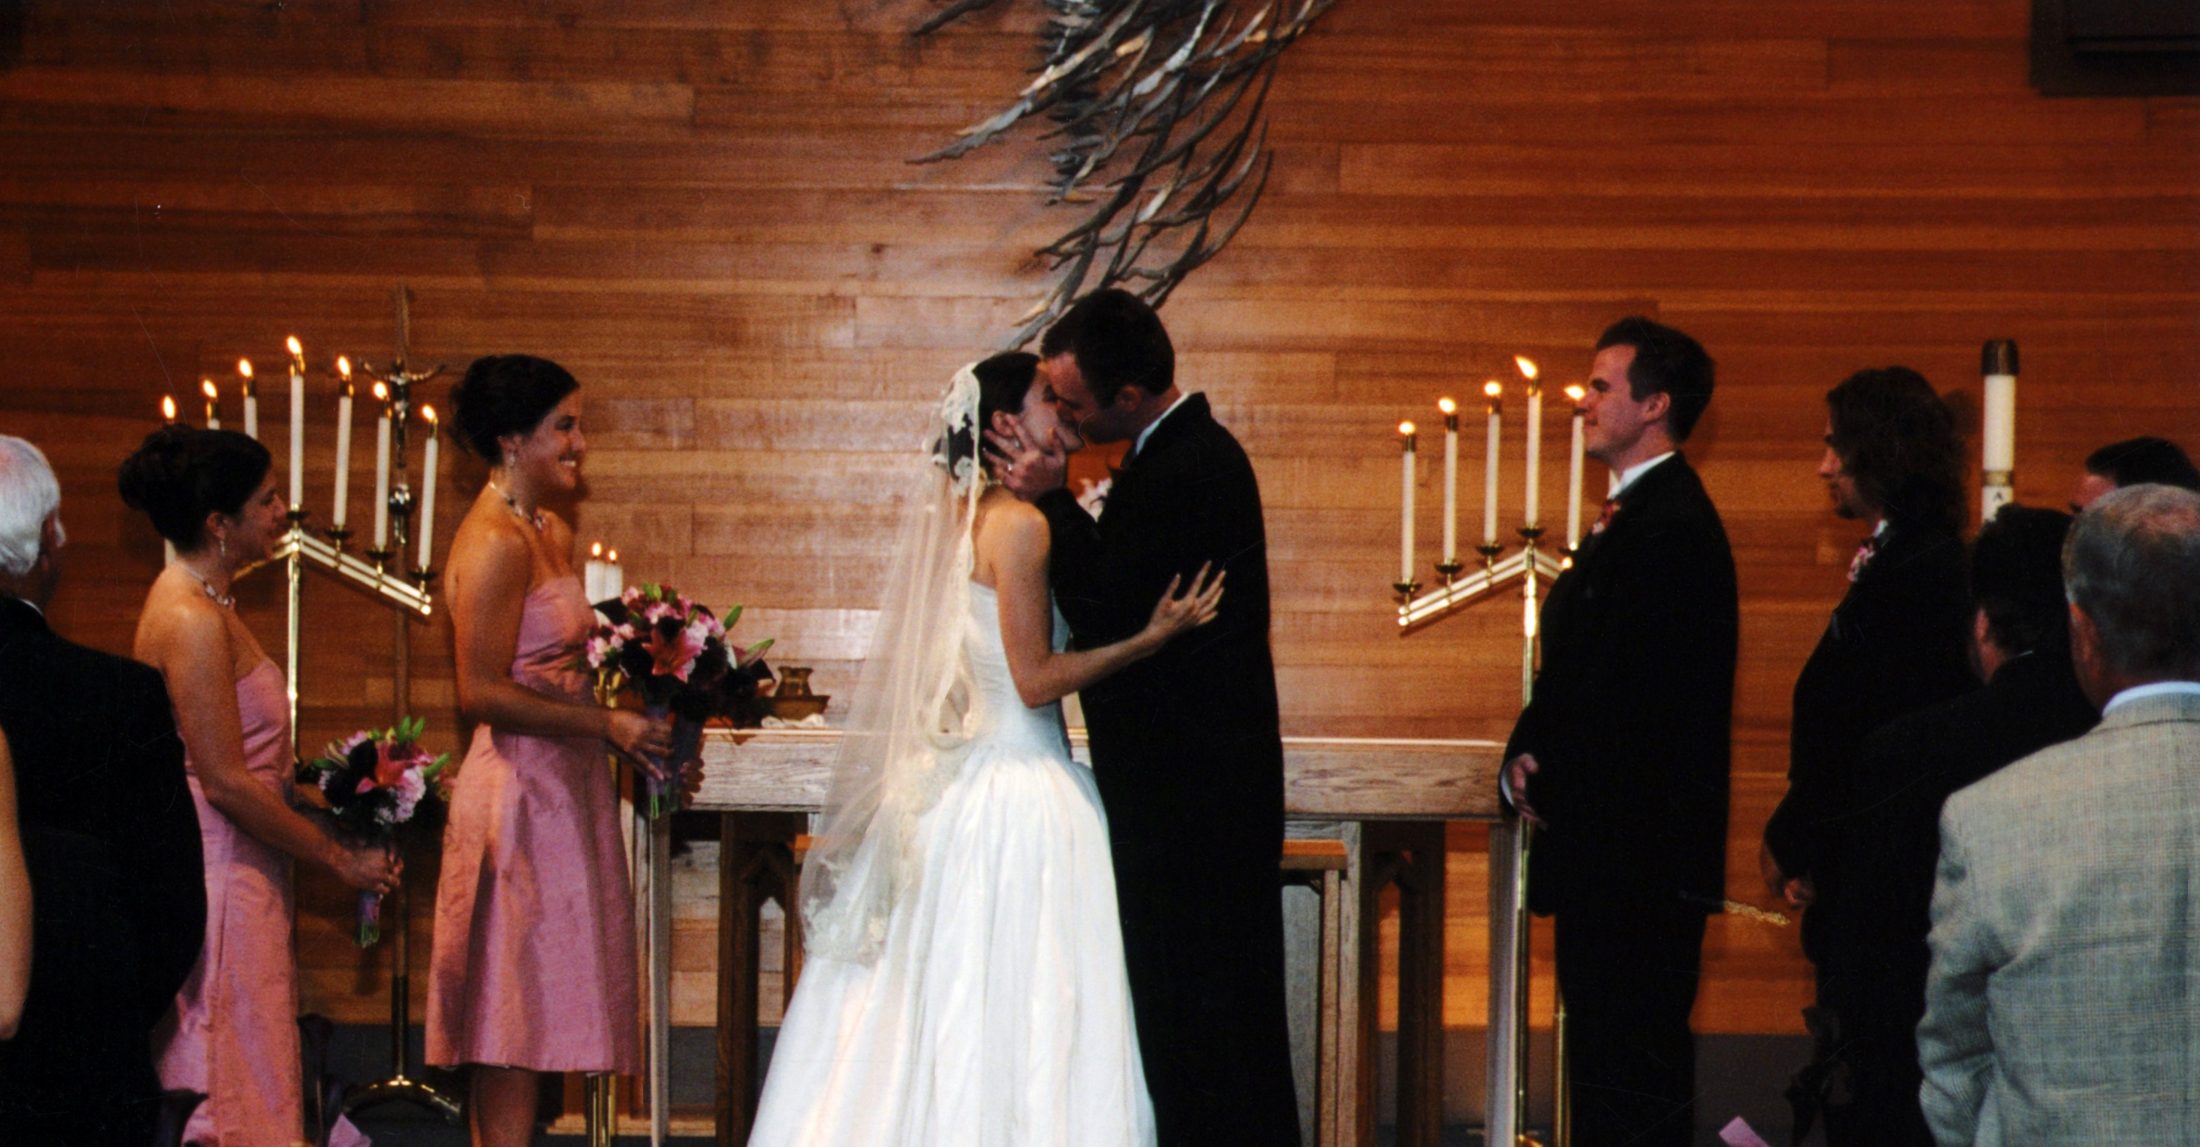 DC widow blog writer Marjorie Brimley marries Shawn Brimley in 2004